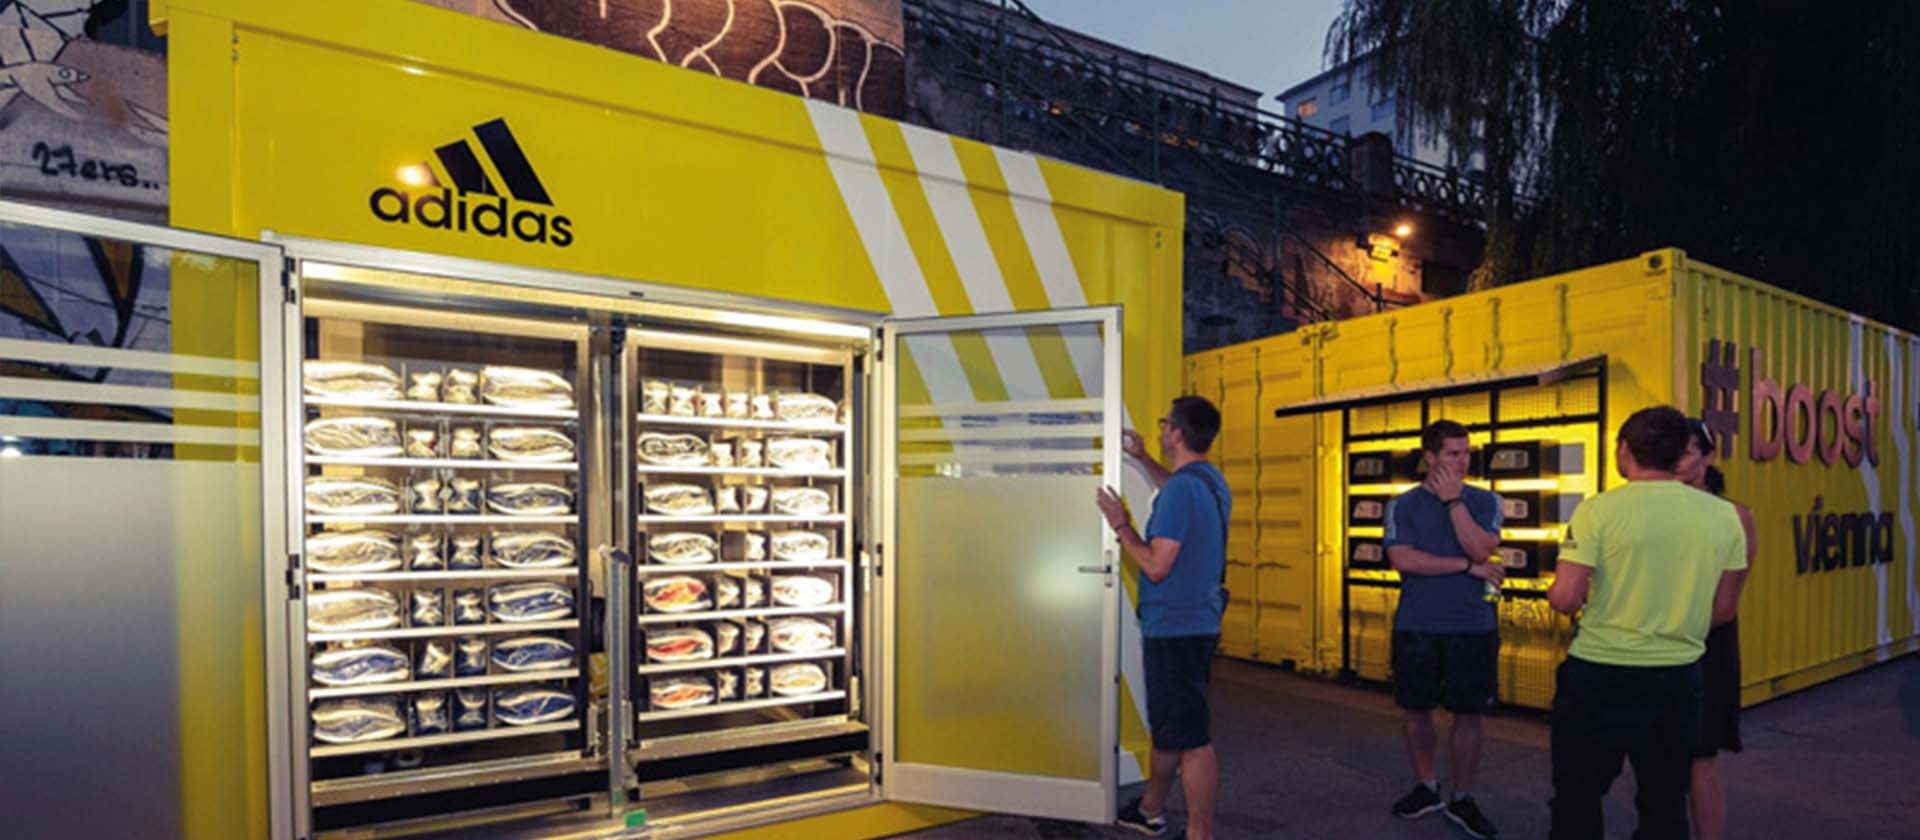 gelber adidas Automat an der Straße gefüllt mit Schuhen